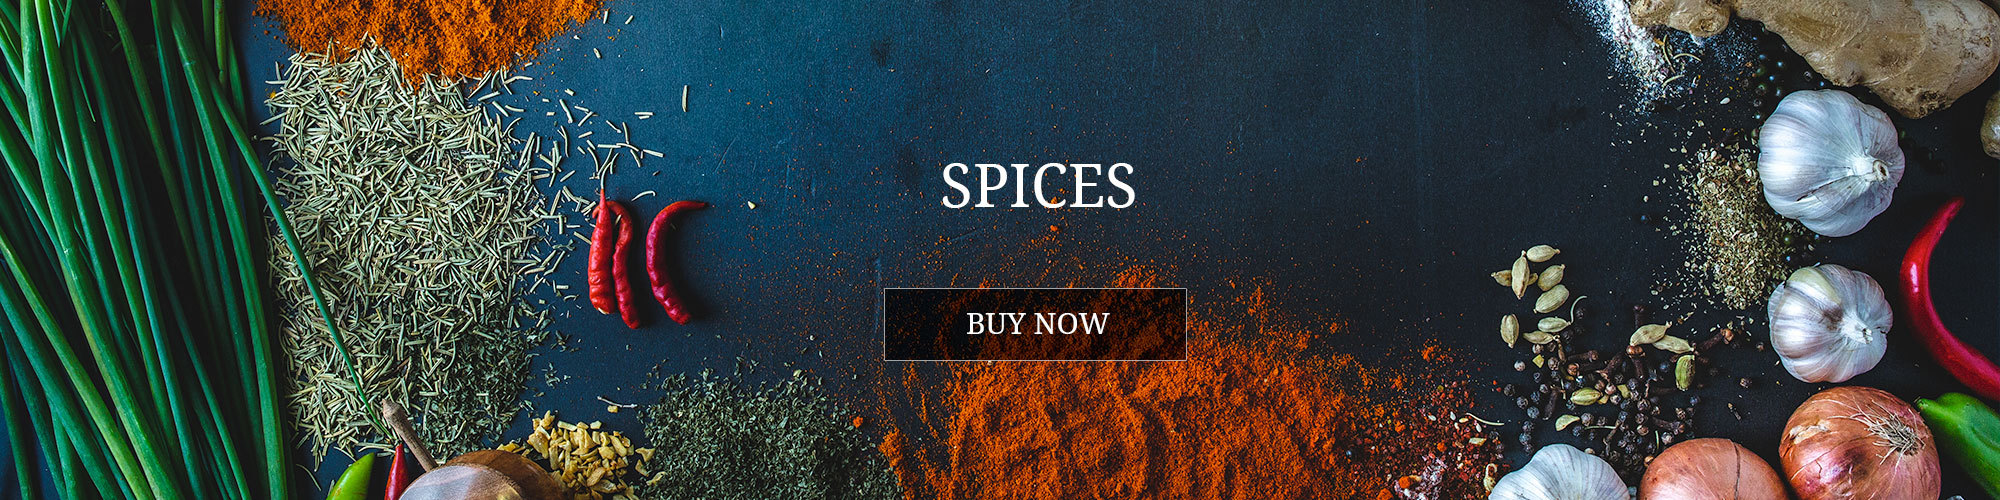 banner-spice